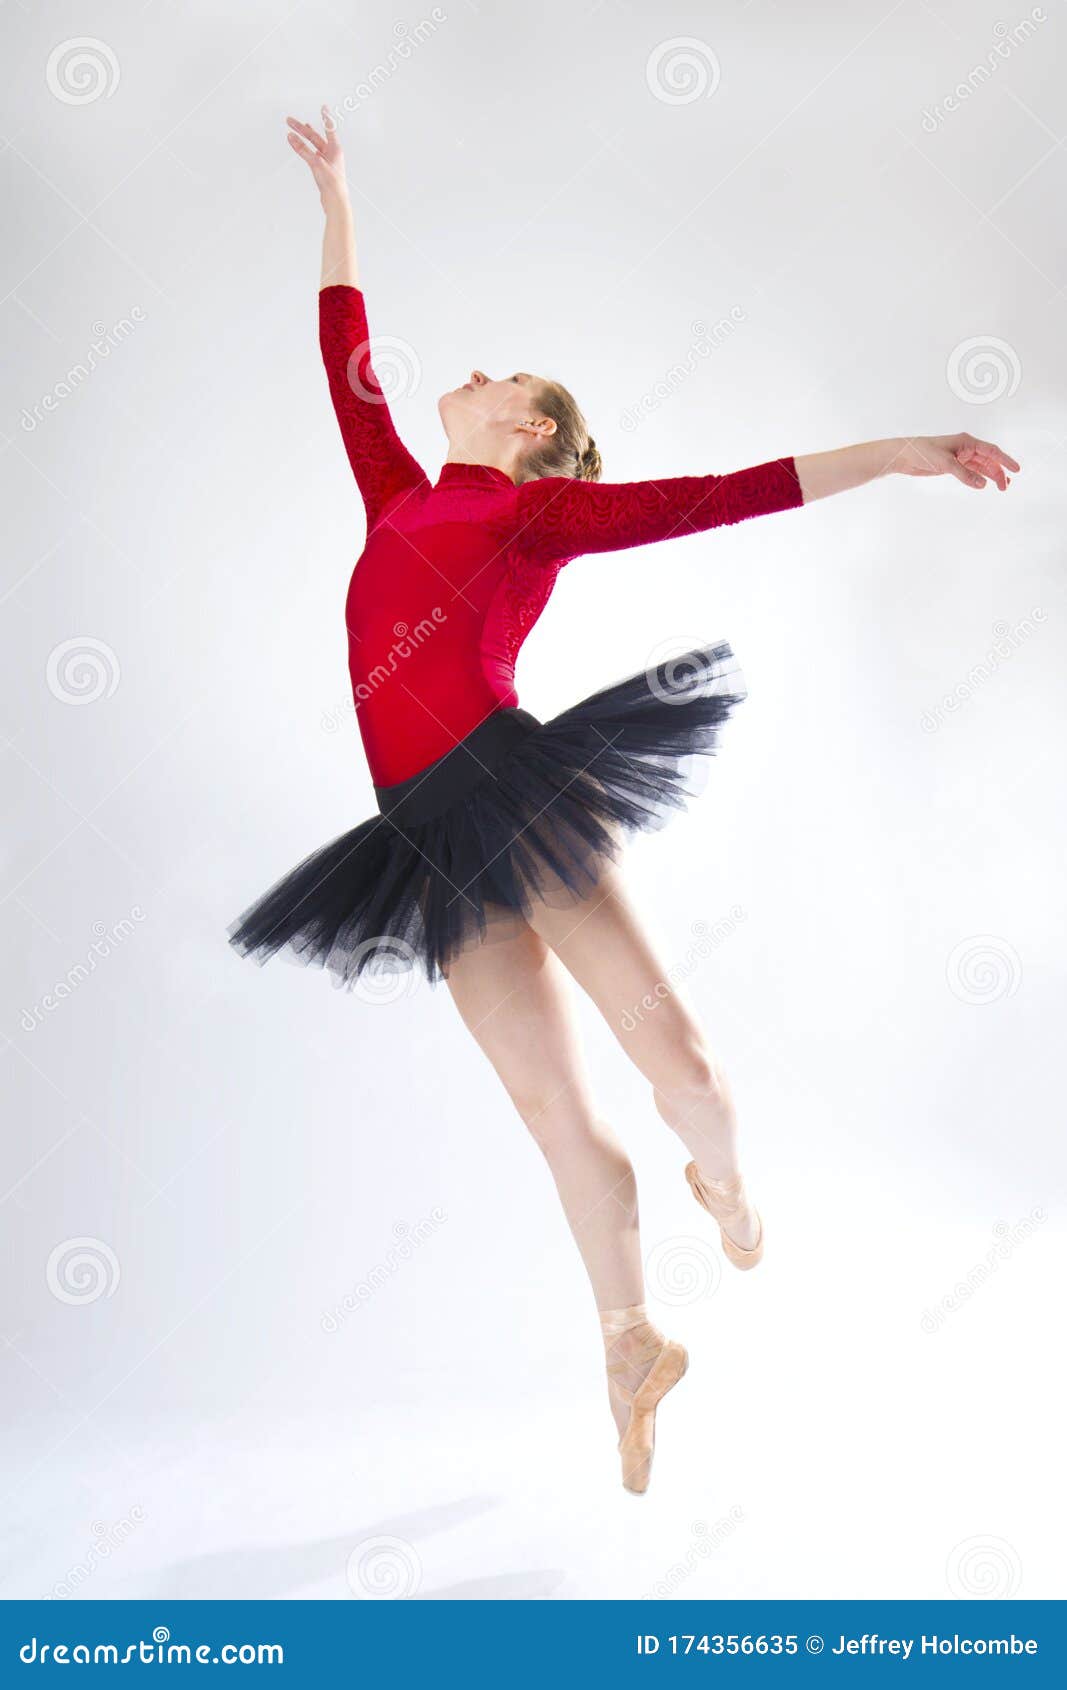 Una mujer en un tutú rojo bailando ballet. Estudio sobre fondo